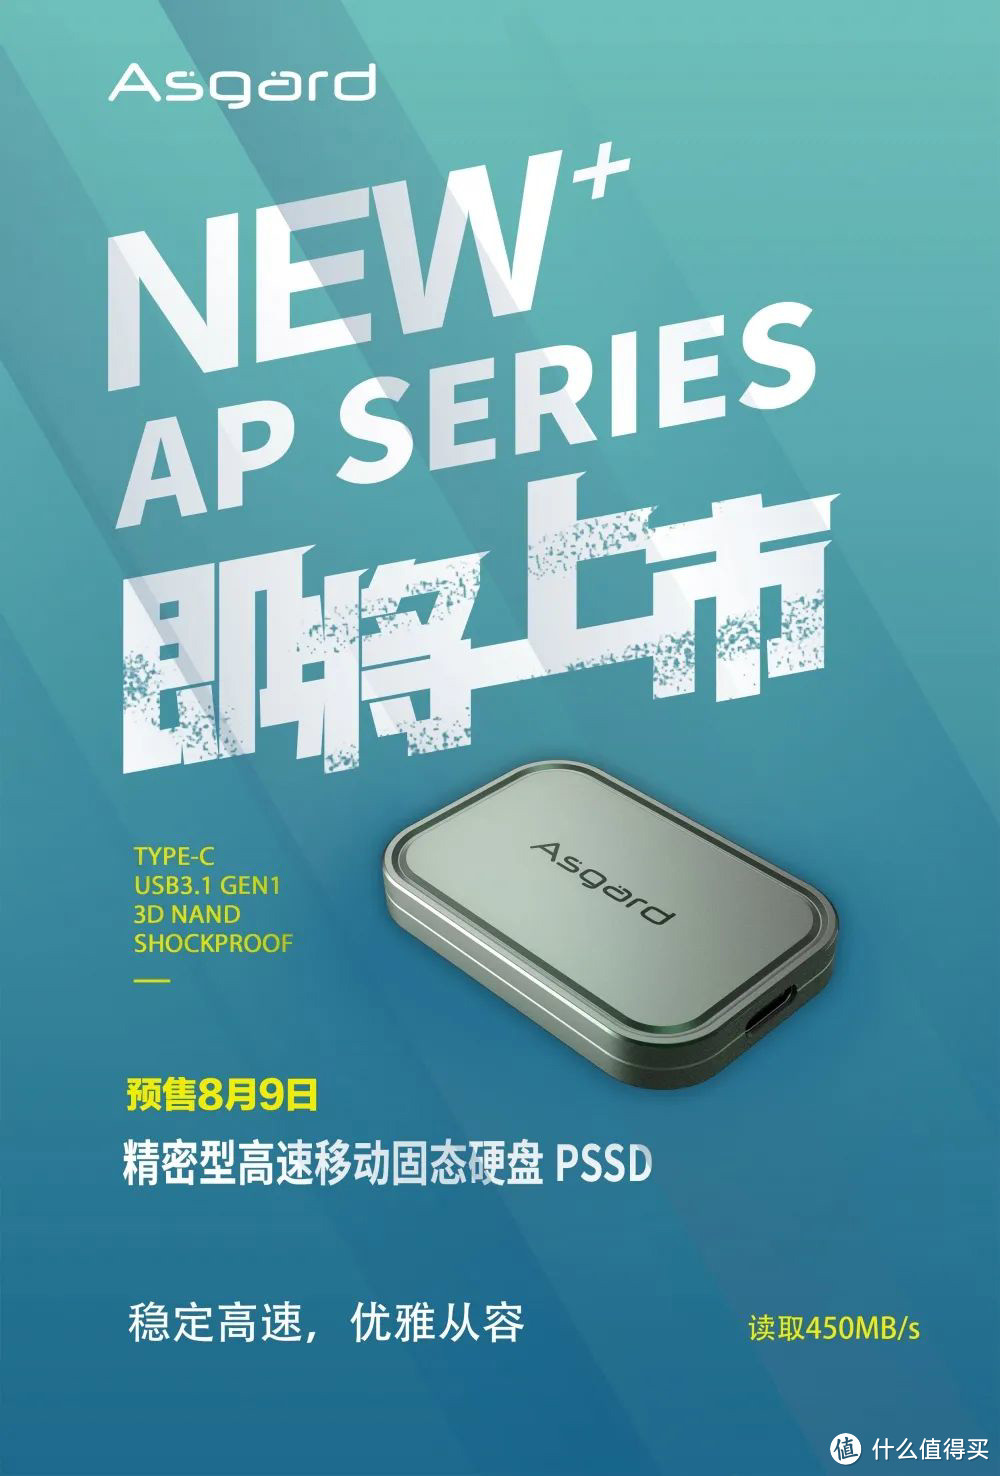 阿斯加特发布 新款 AP 系列移动固态硬盘，坚固耐用，连读450MB/s